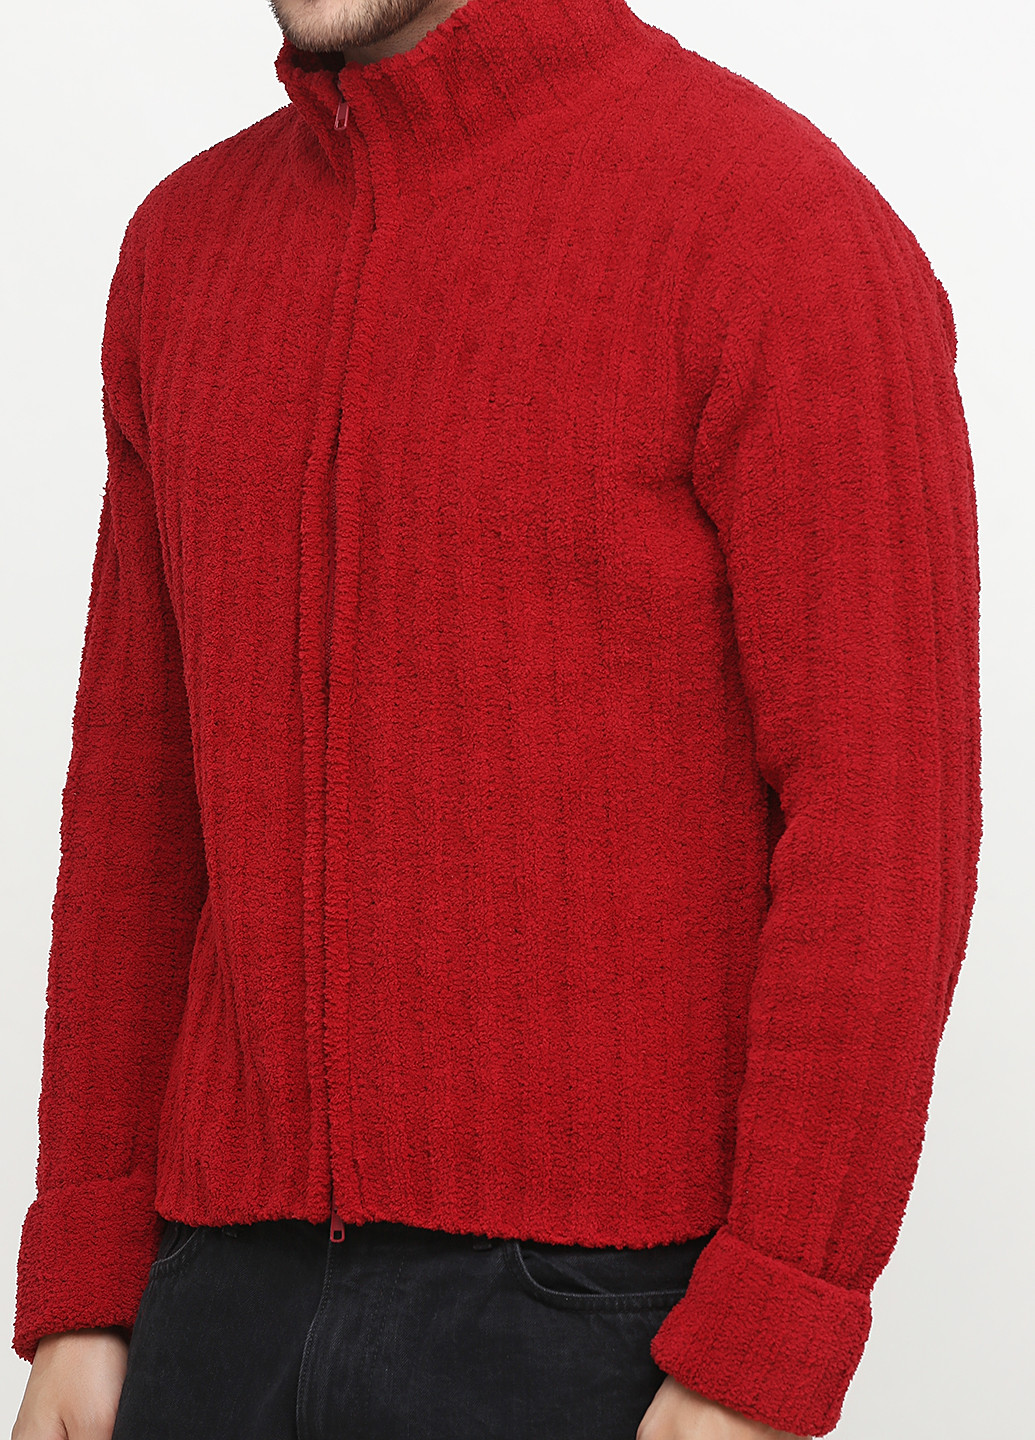 Бордовый зимний свитер хомут Colorado clothing